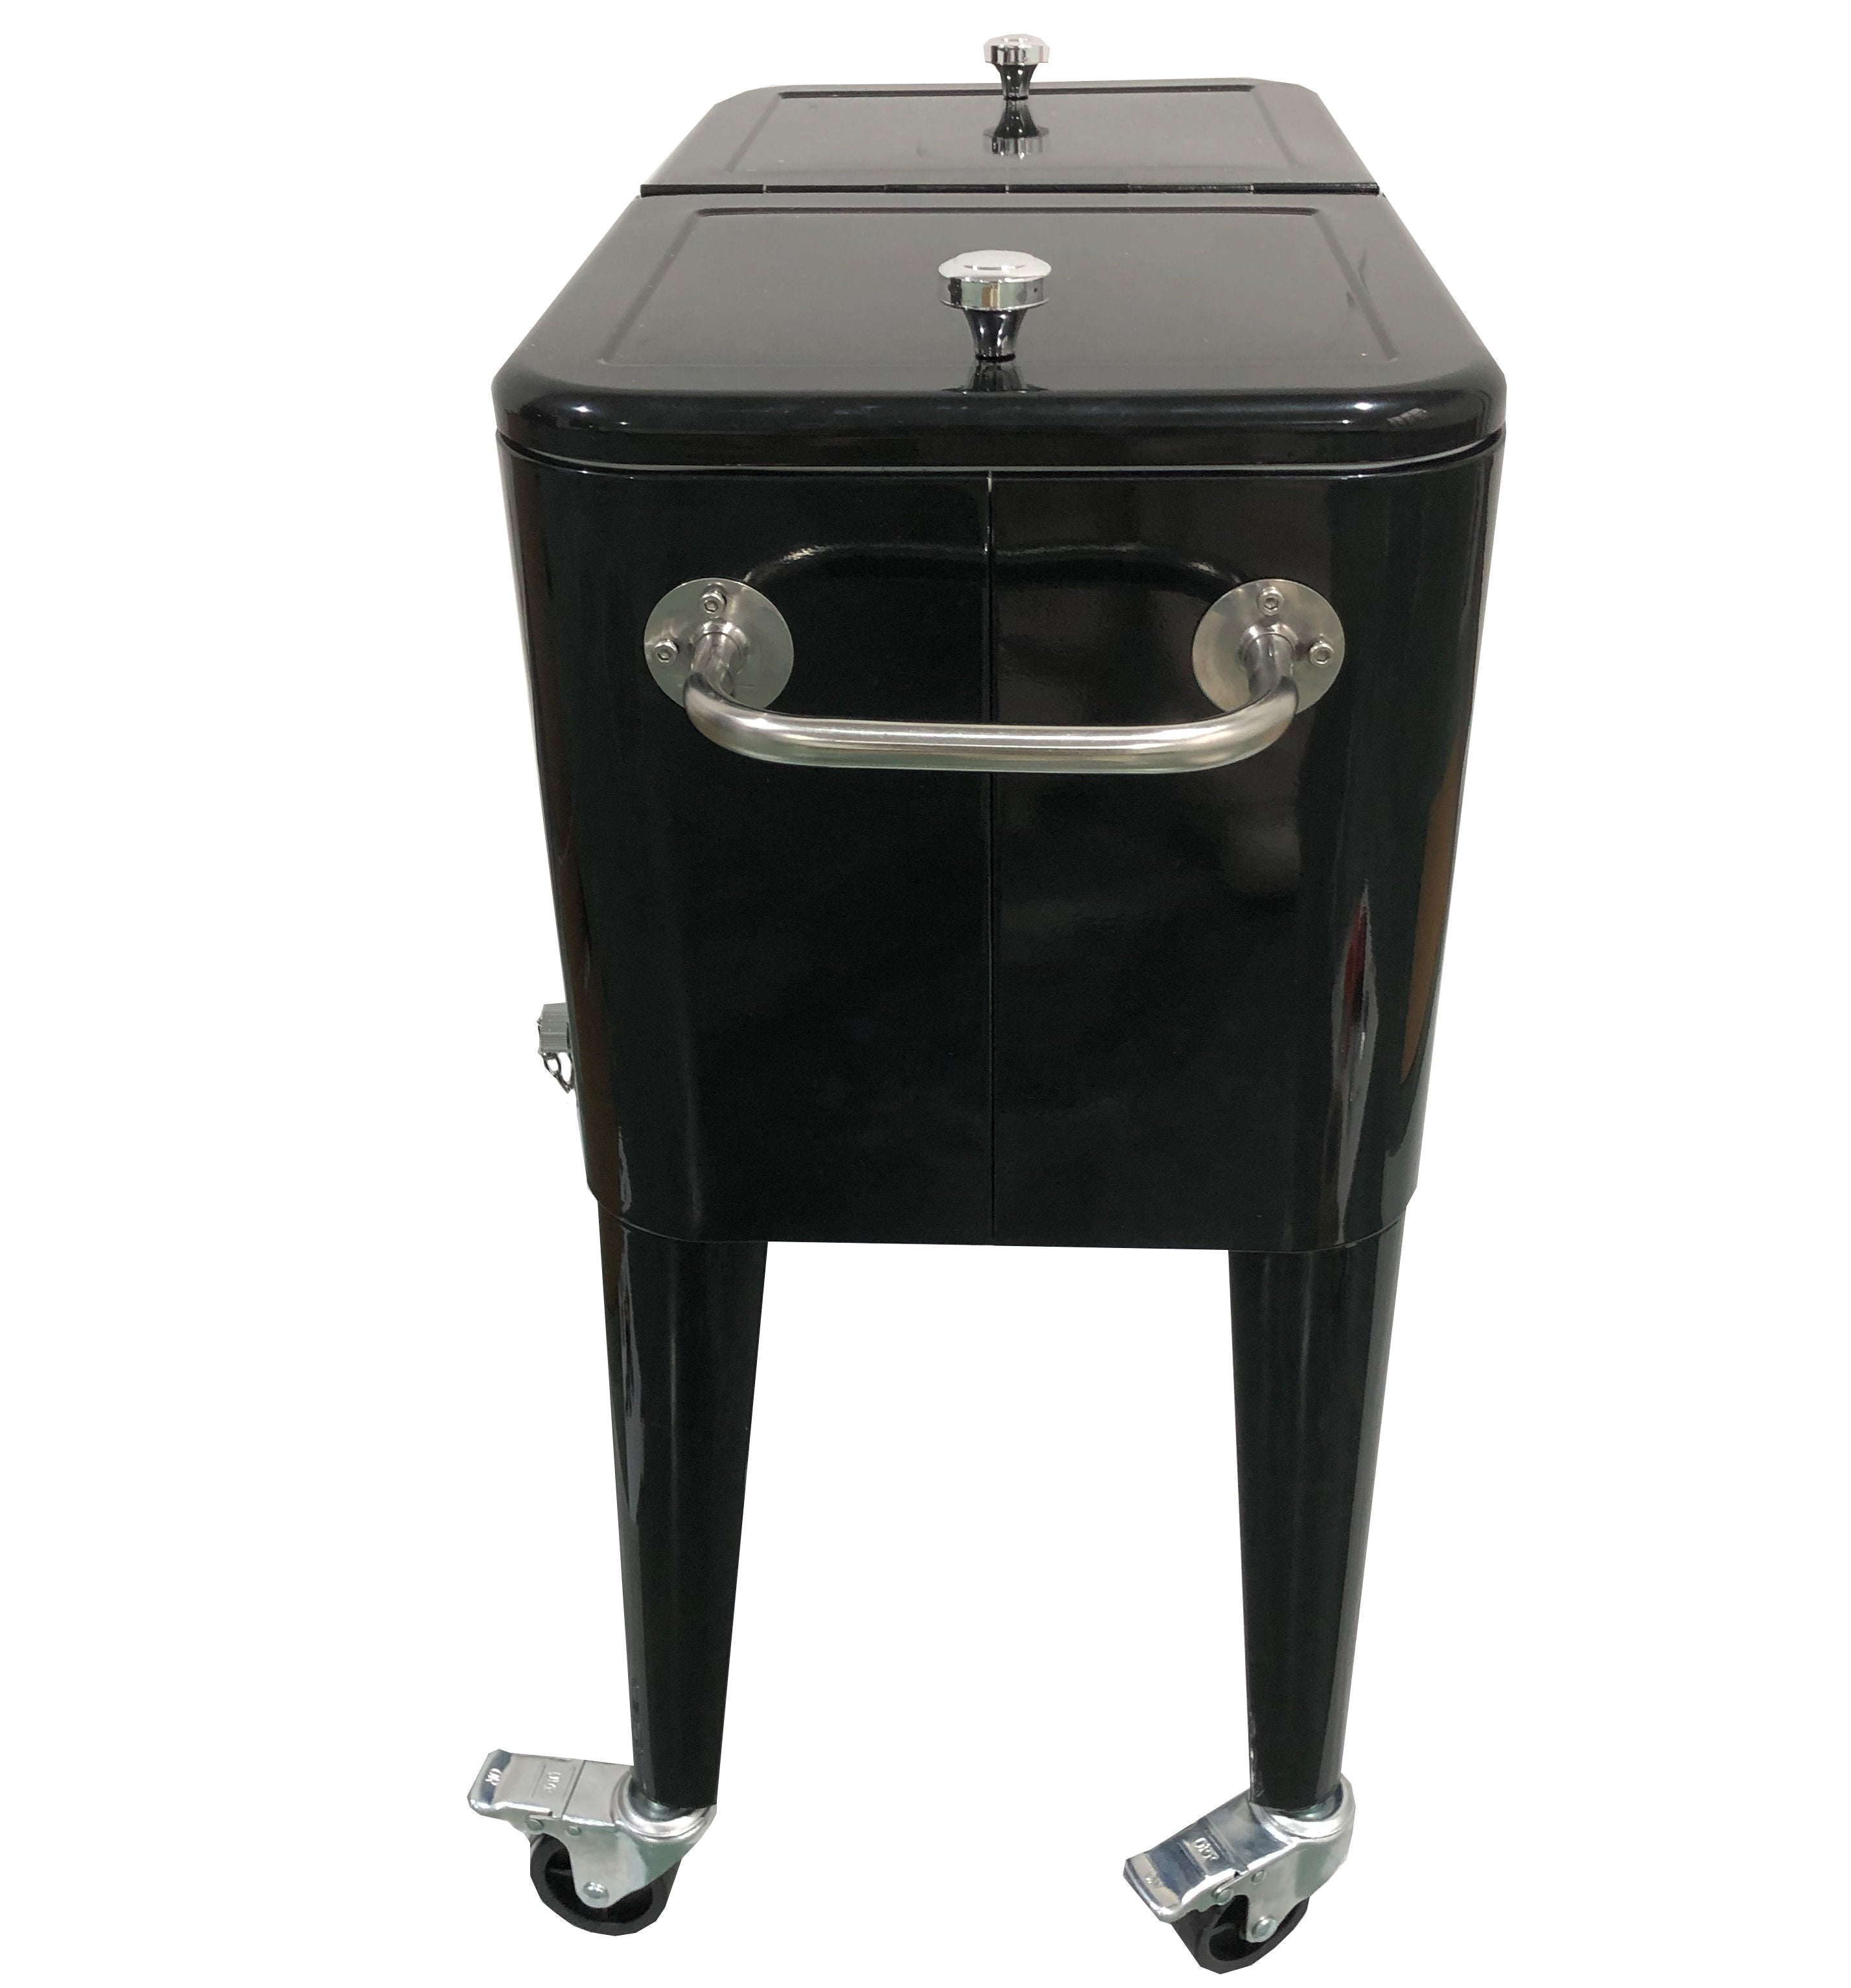 PatioZone 60QT (57L) Vintage Rolling Cooler Cart w/Lid and Bottle Opener, Steel Frame (MOSS-2006N) - Black